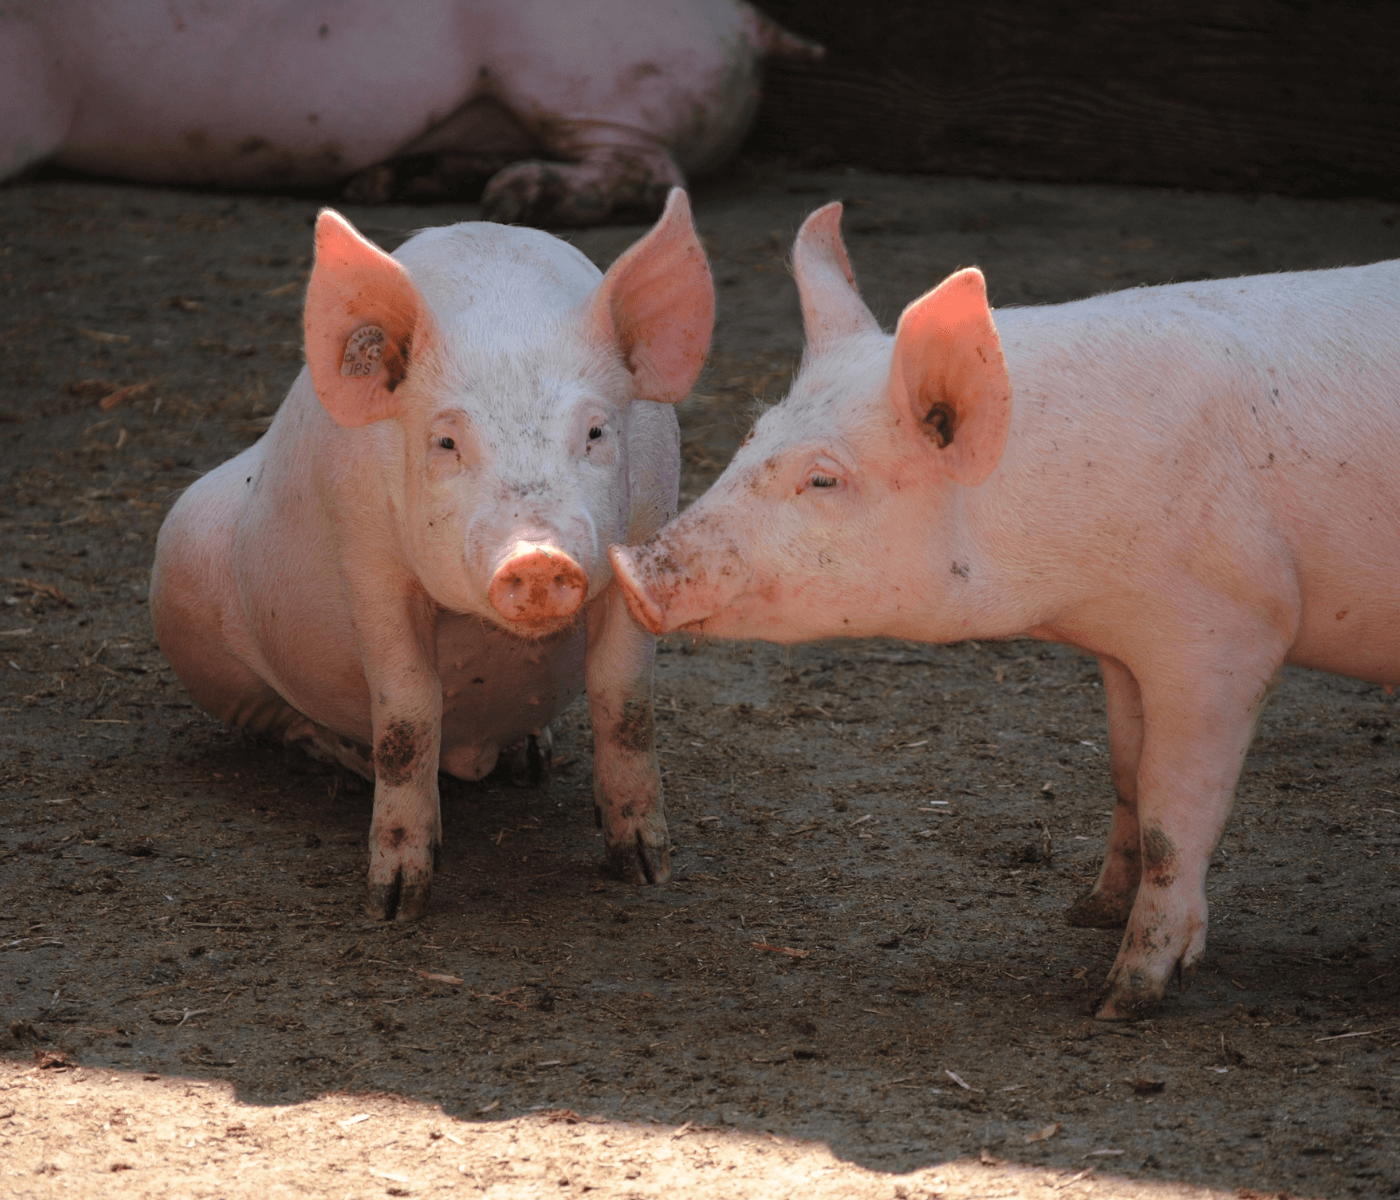 Streptococcus en cerdos: Comprendiendo los desafíos productivos